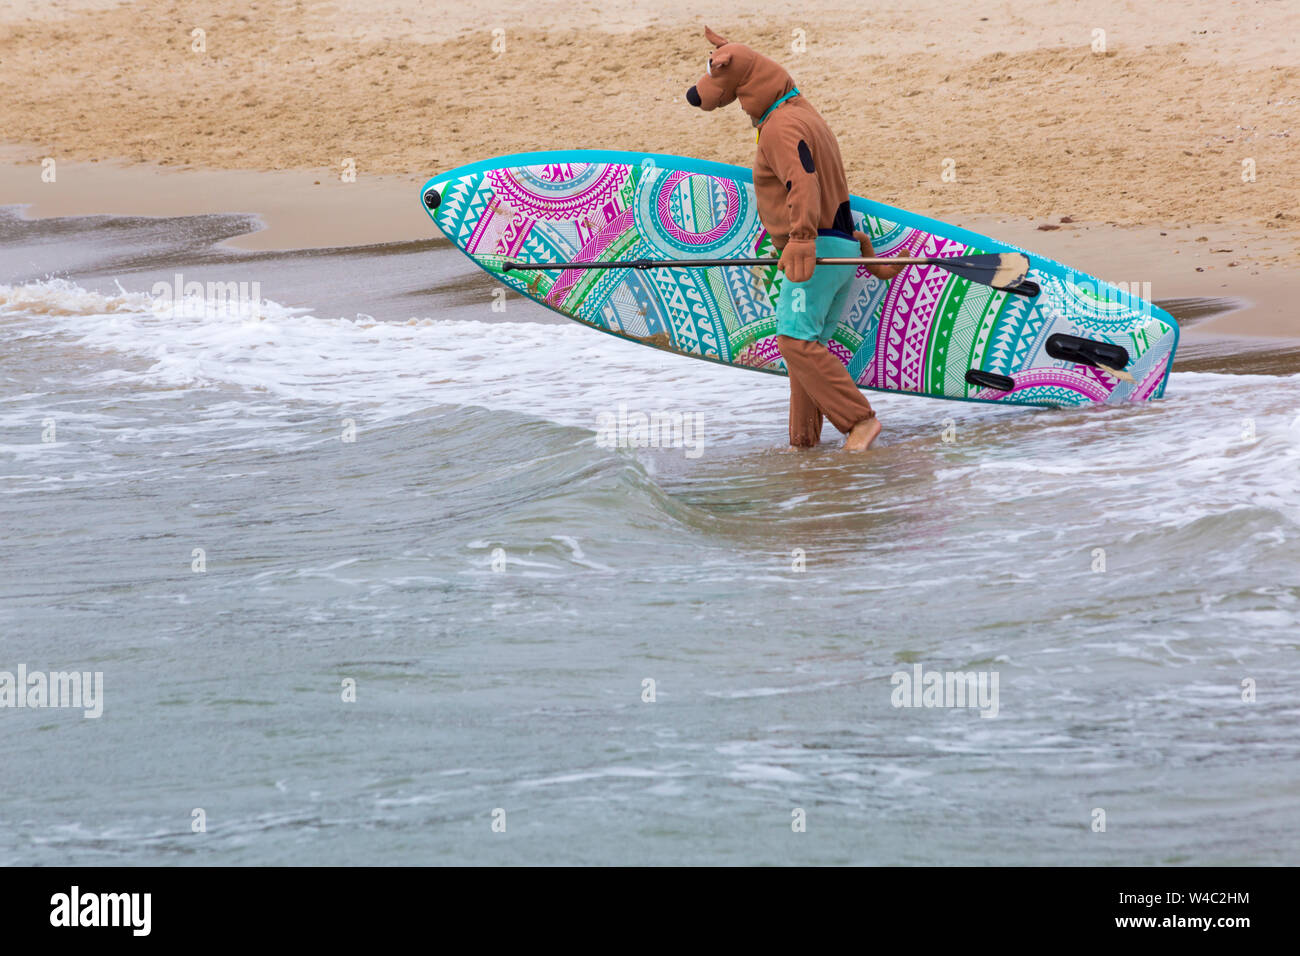 Scooby Doo geht surfen, paddleboarding für Hund Surfen Meisterschaften an branksome Dene Chine Beach, Poole, Dorset Großbritannien im Juli Stockfoto